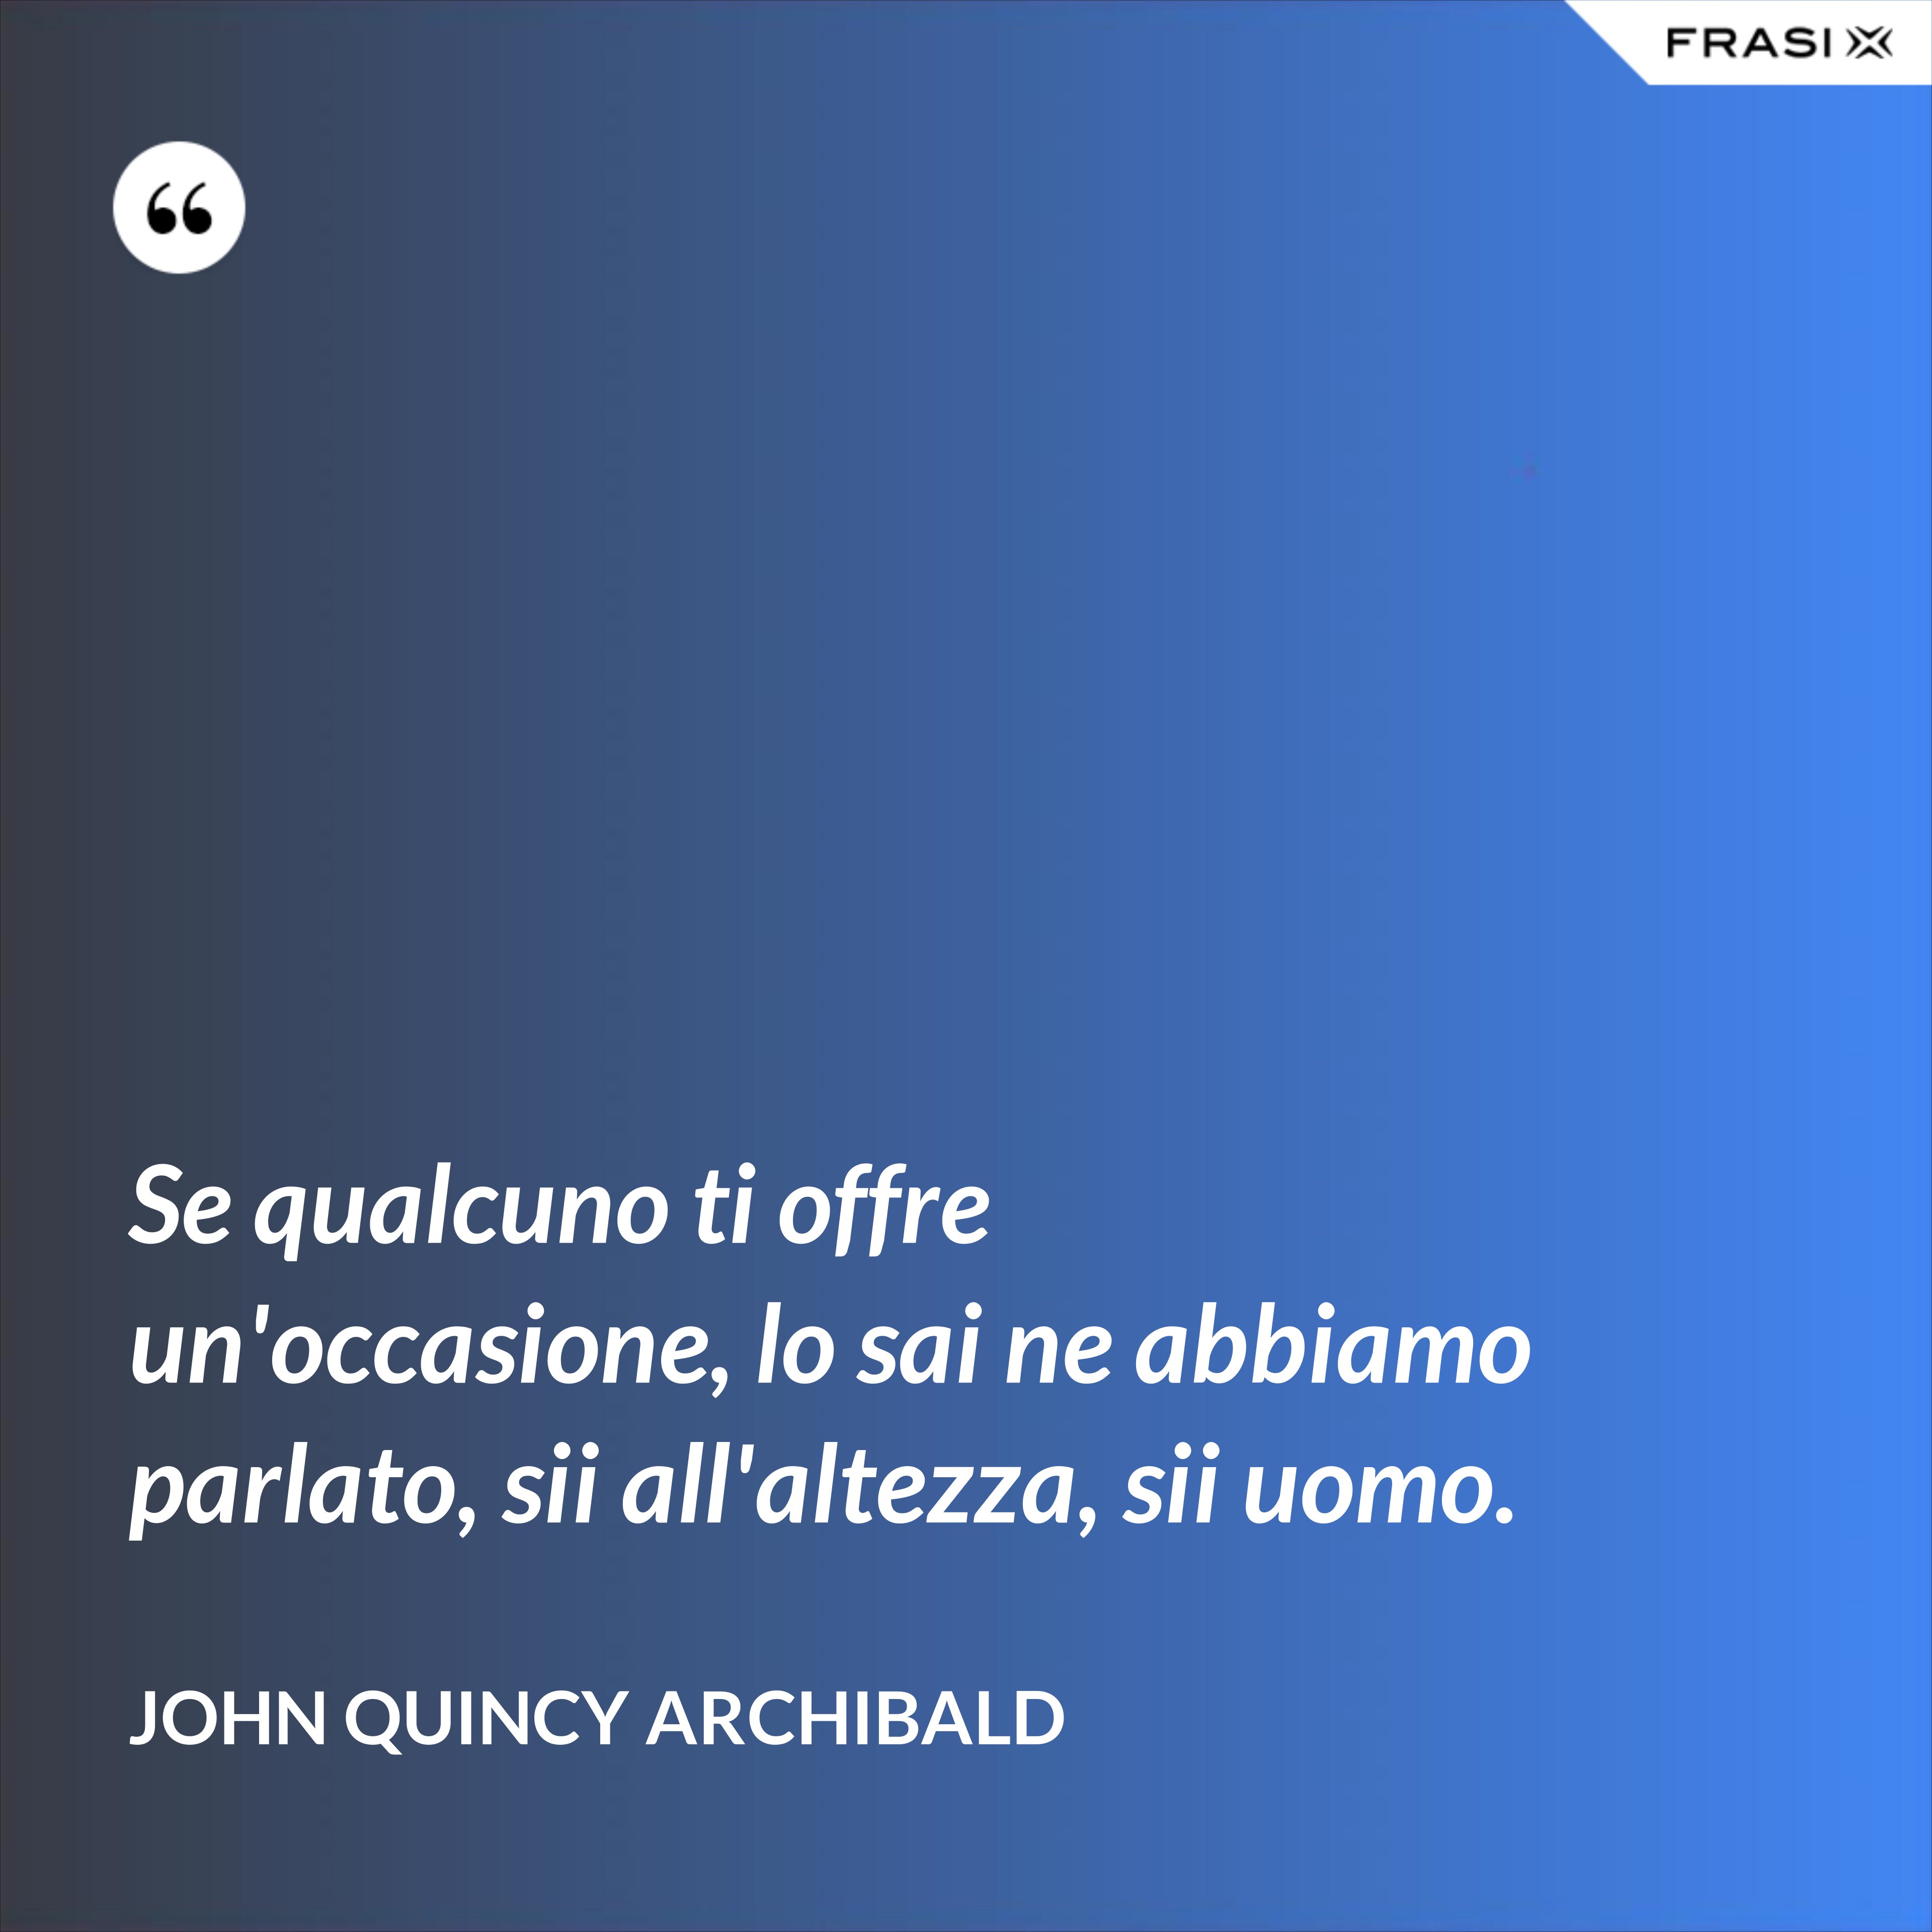 Se qualcuno ti offre un'occasione, lo sai ne abbiamo parlato, sii all'altezza, sii uomo. - John Quincy Archibald